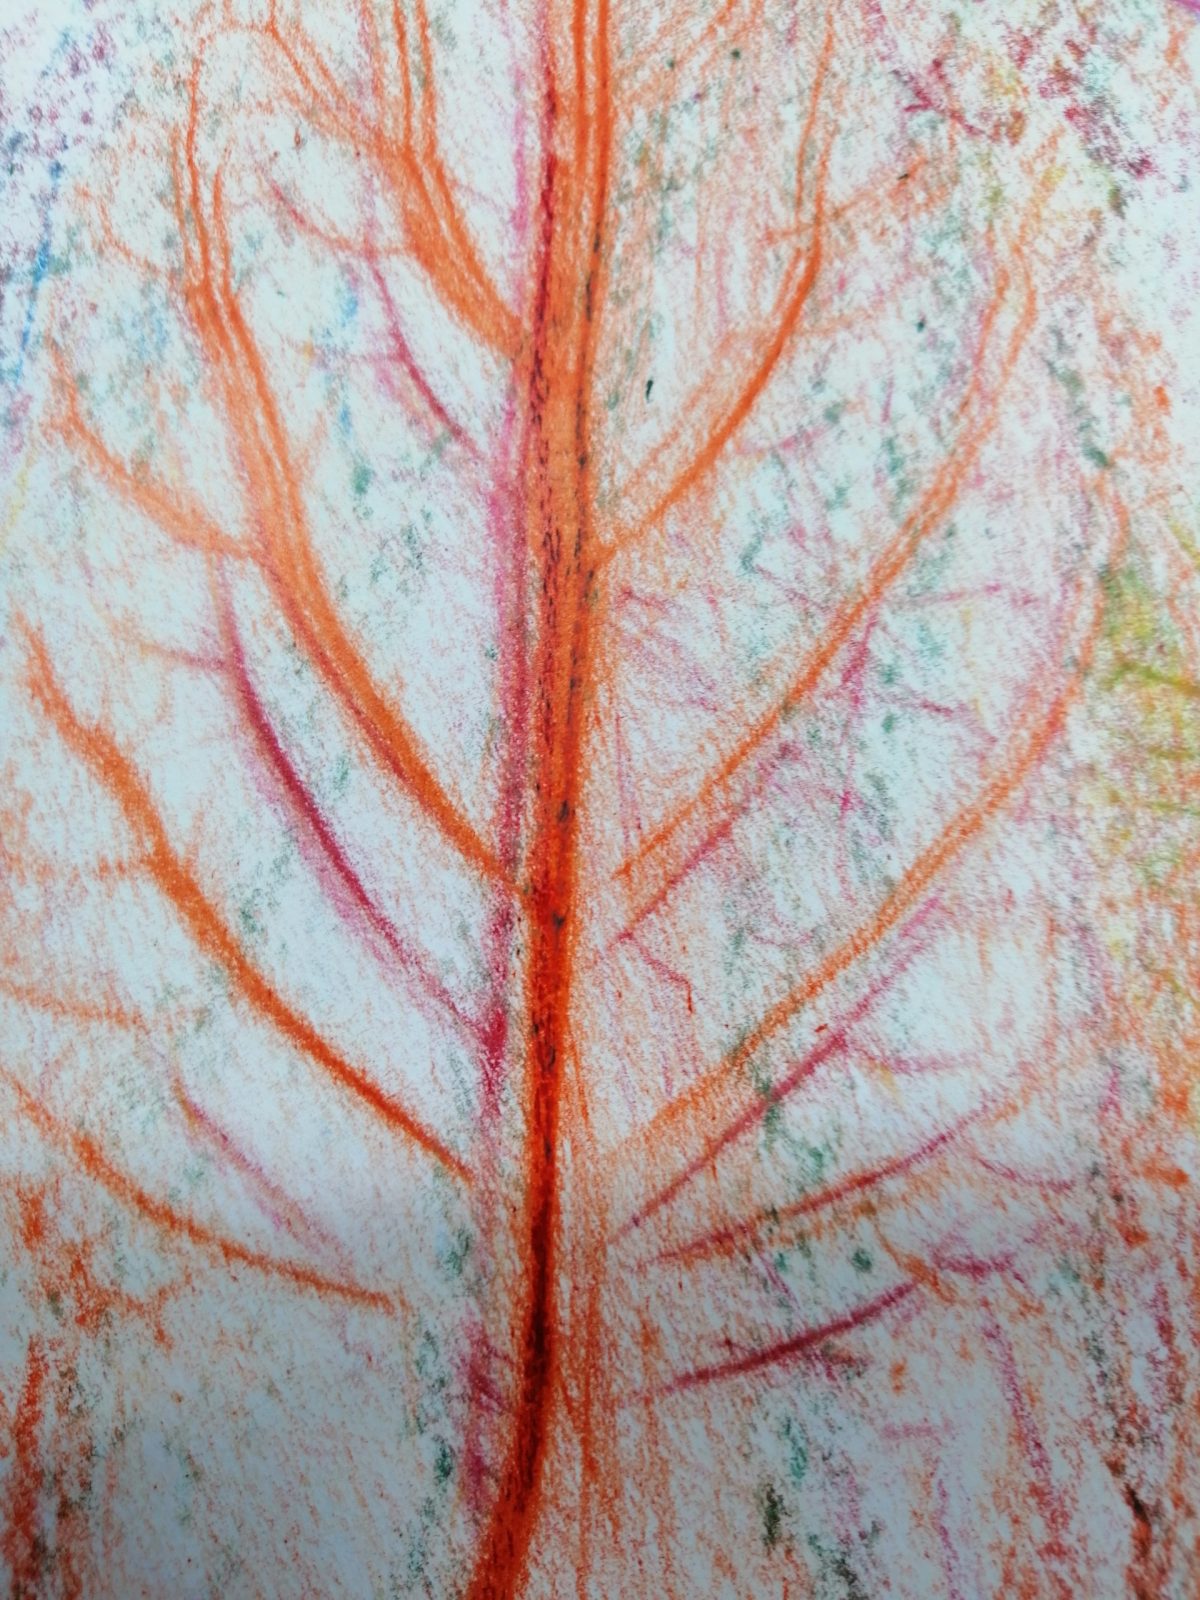 Kompozycja plastyczna struktury fragmentu jesiennego liścia w układzie centralnym. Praca wykonana w technice frotażu z użyciem barw ciepłych i zimnych.